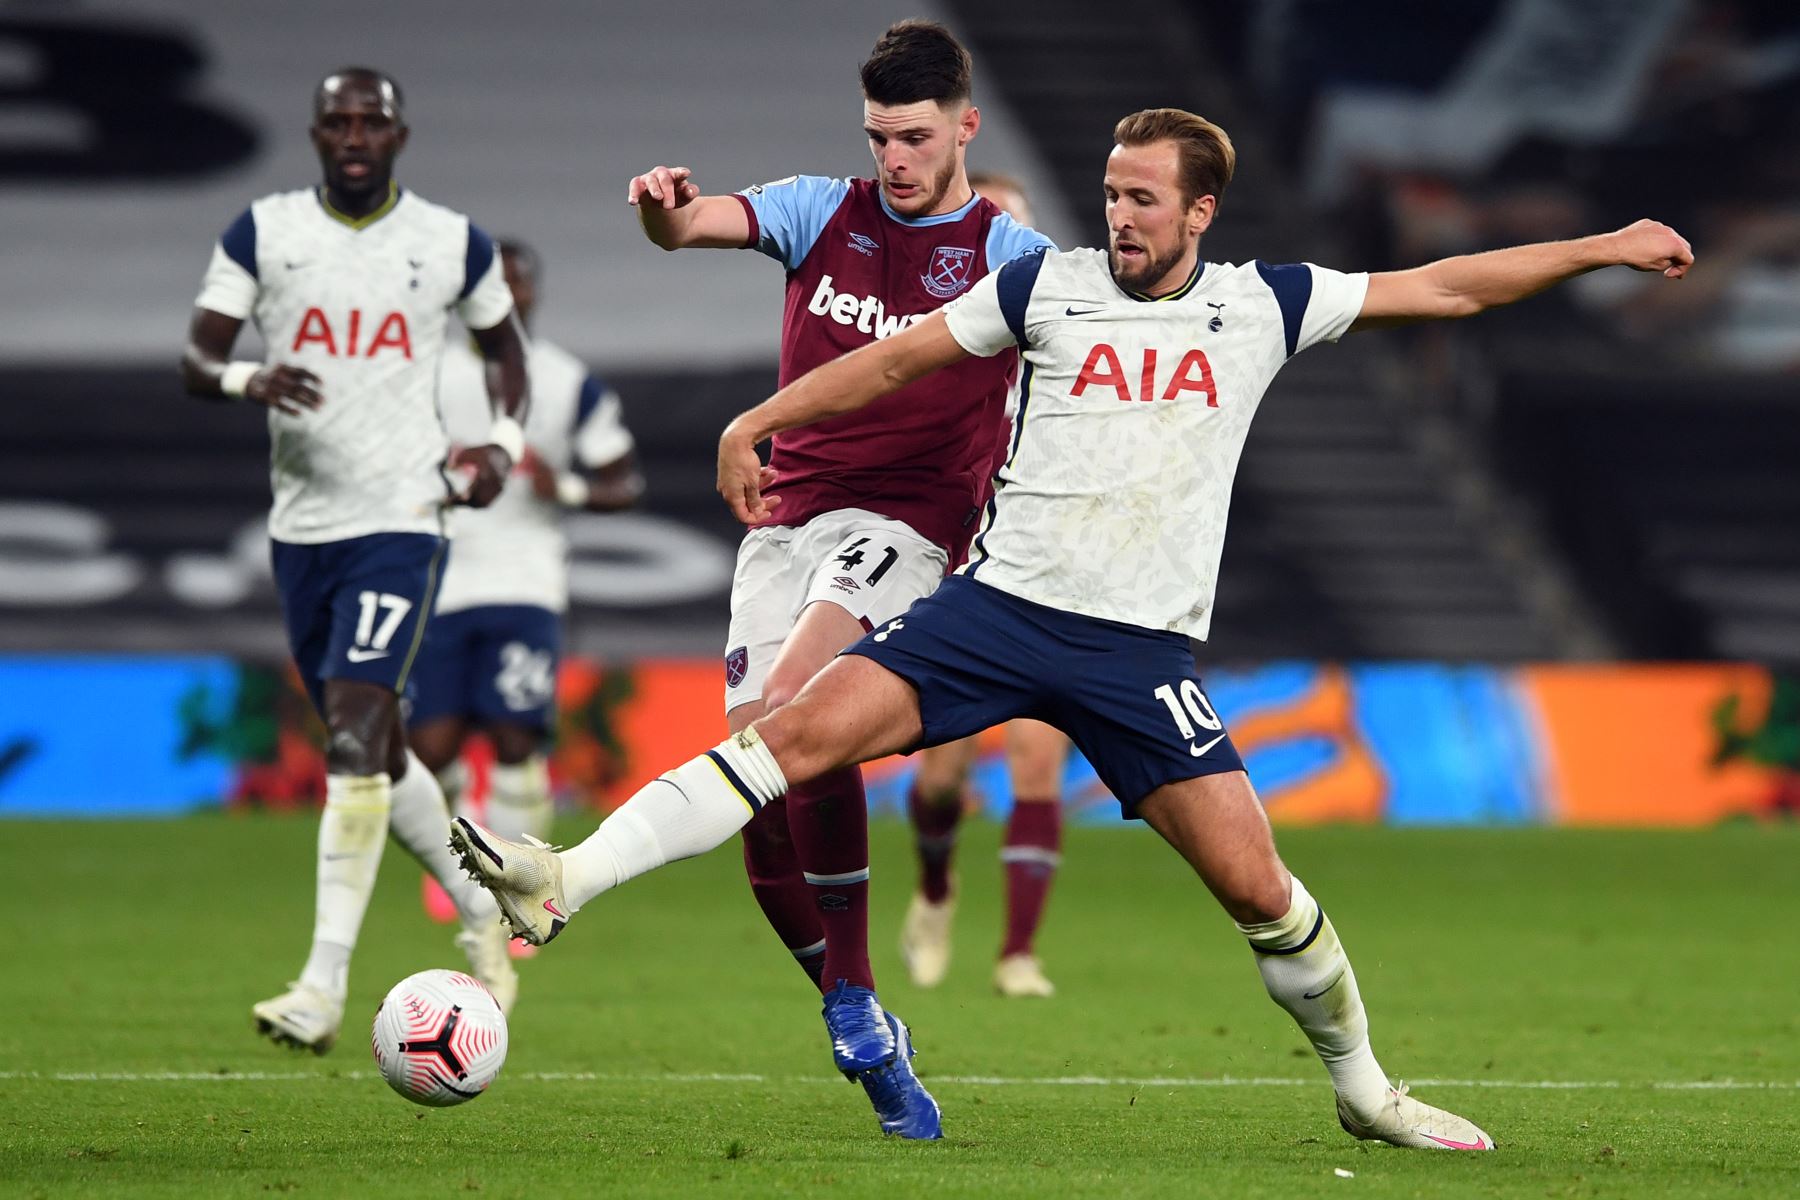 El centrocampista inglés Declan Rice del West Ham United y el delantero inglés Harry Kane del Tottenham Hotspur compiten por el balón durante el partido de fútbol de la Premier League. Foto: AFP